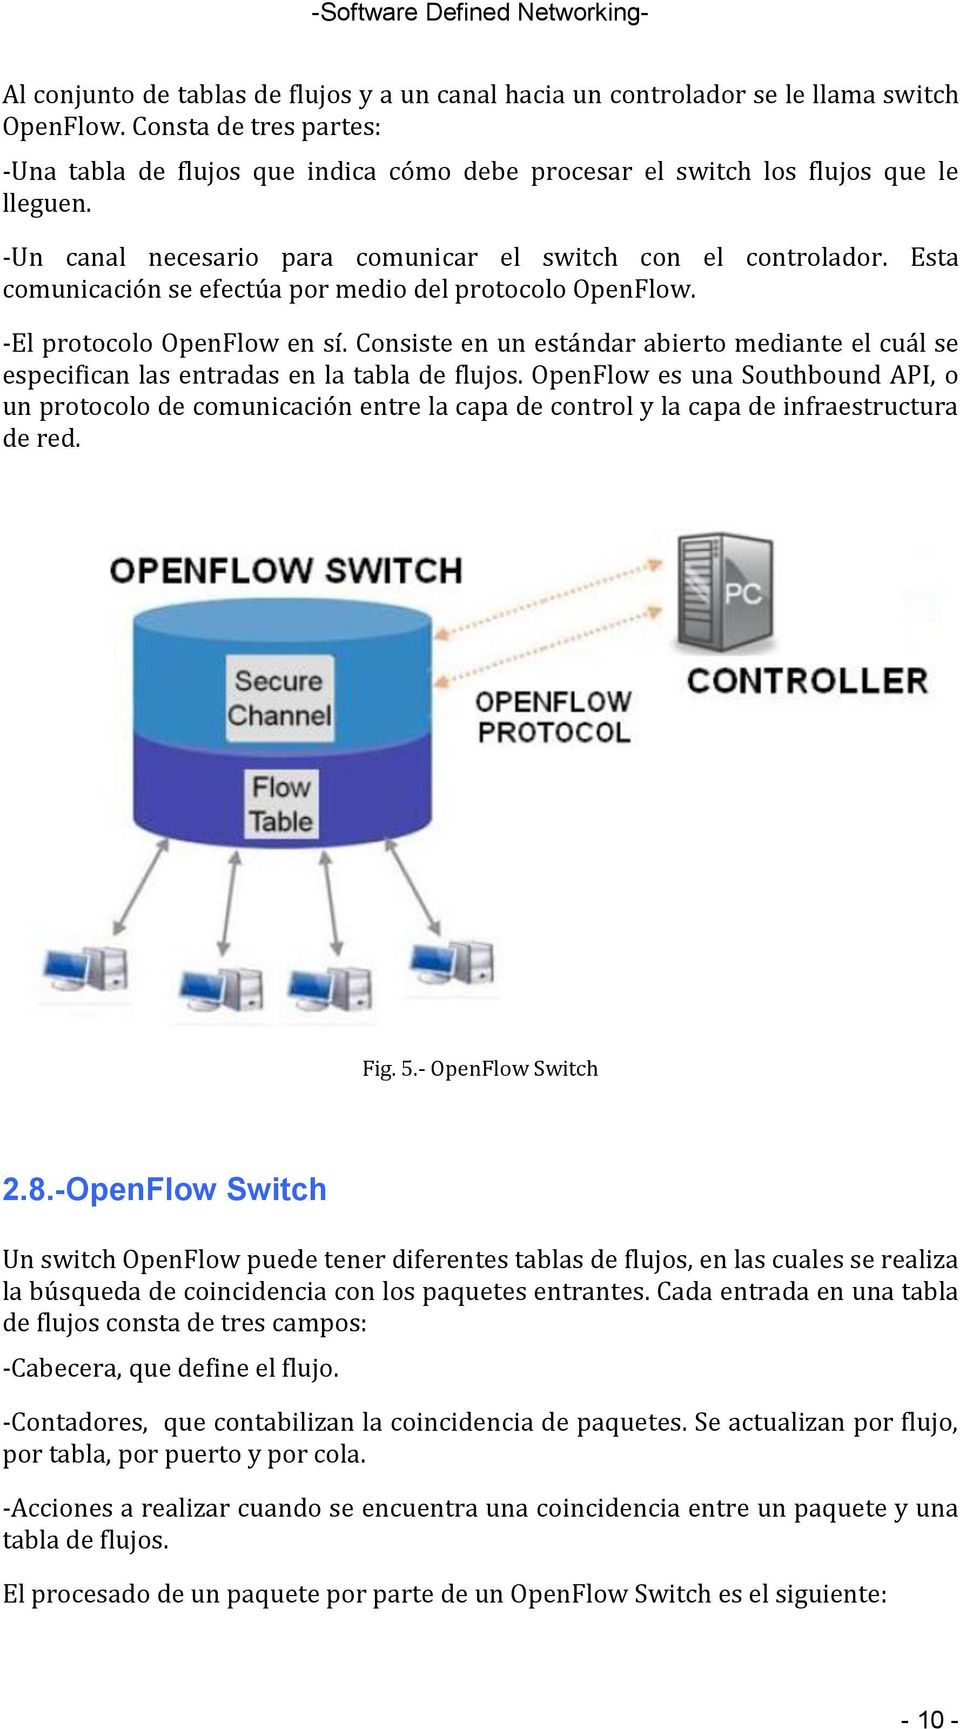 Esta comunicación se efectúa por medio del protocolo OpenFlow. -El protocolo OpenFlow en sí. Consiste en un estándar abierto mediante el cuál se especifican las entradas en la tabla de flujos.